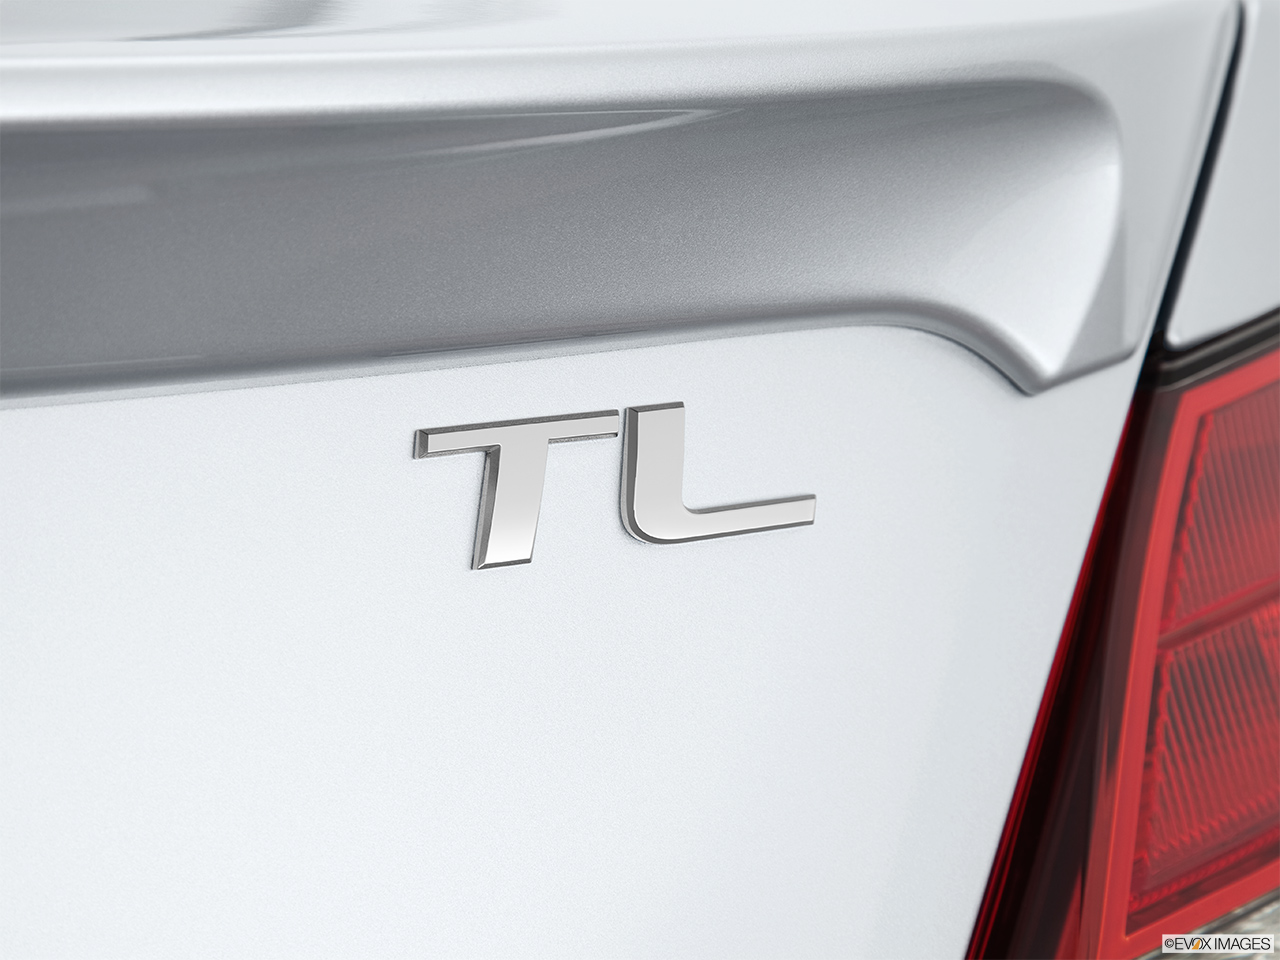 2013 Acura TL SH-AWD Rear model badge/emblem 